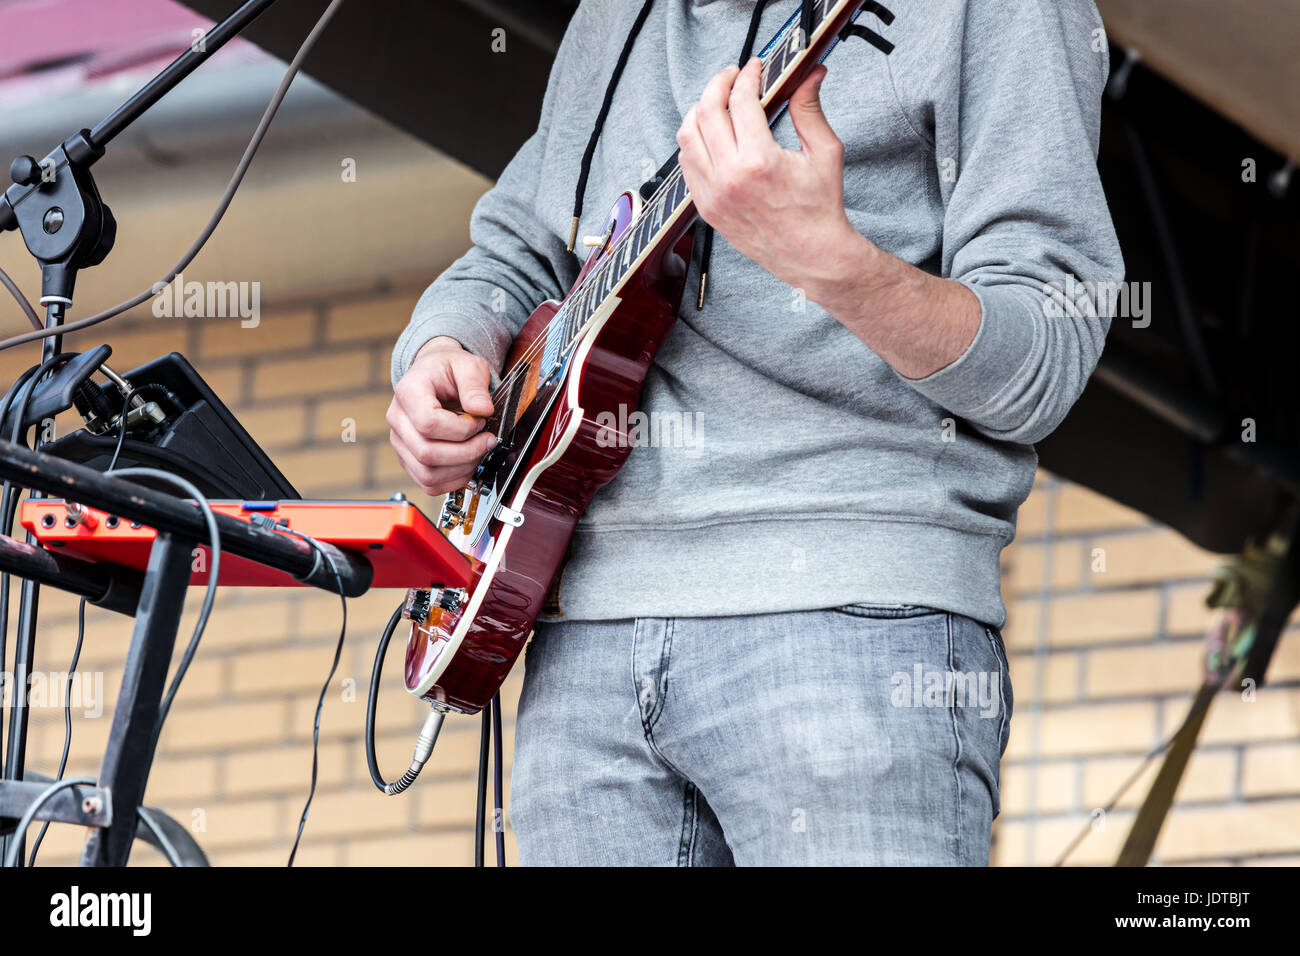 Hände des jungen Musikers Elektro Gitarre zu spielen, während die Leistung der Stadt Stockfoto